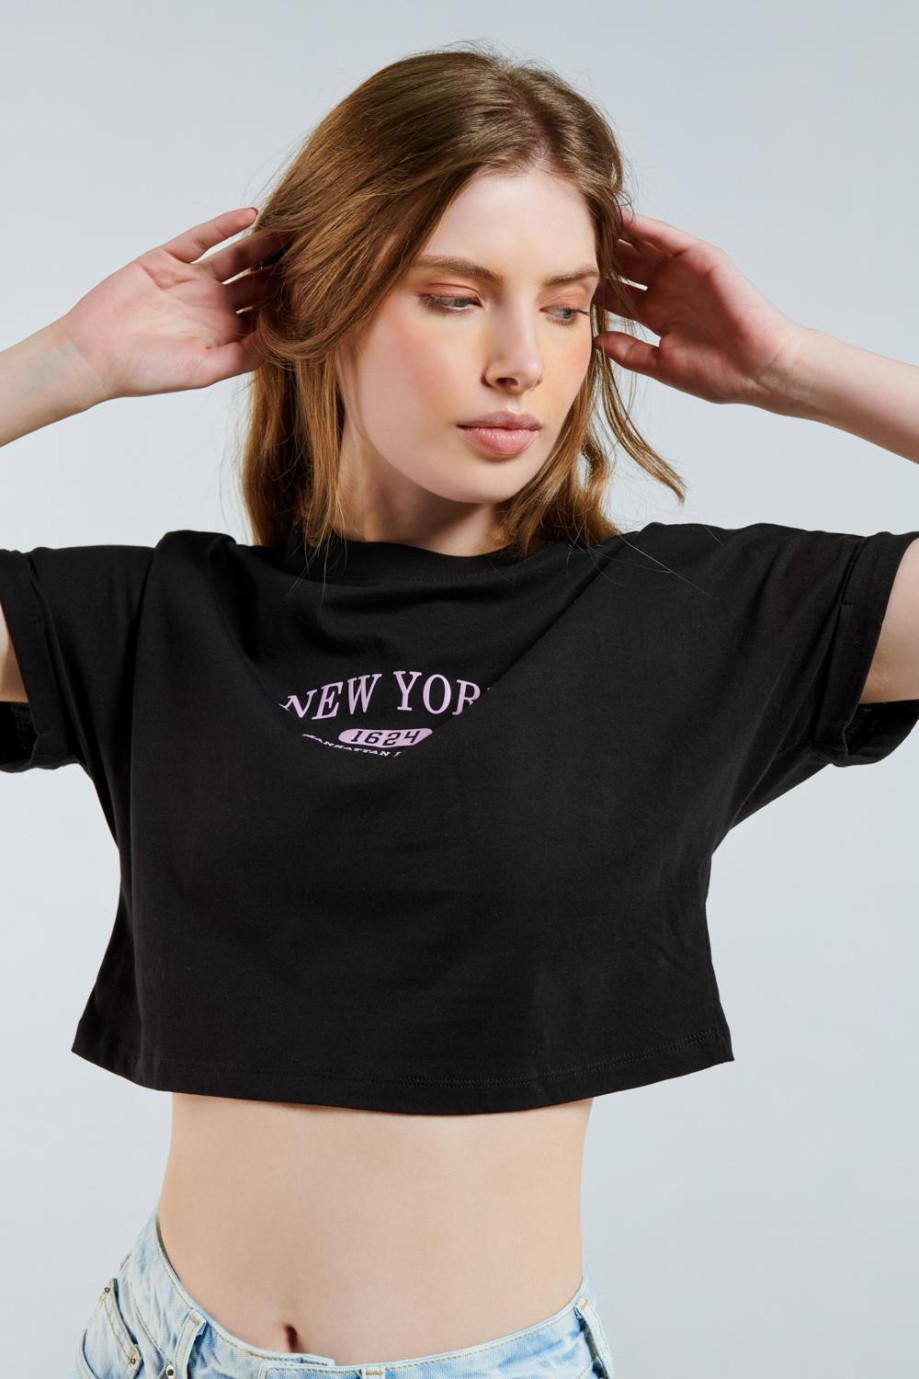 Camiseta crop top negra en algodón con diseño college de New York